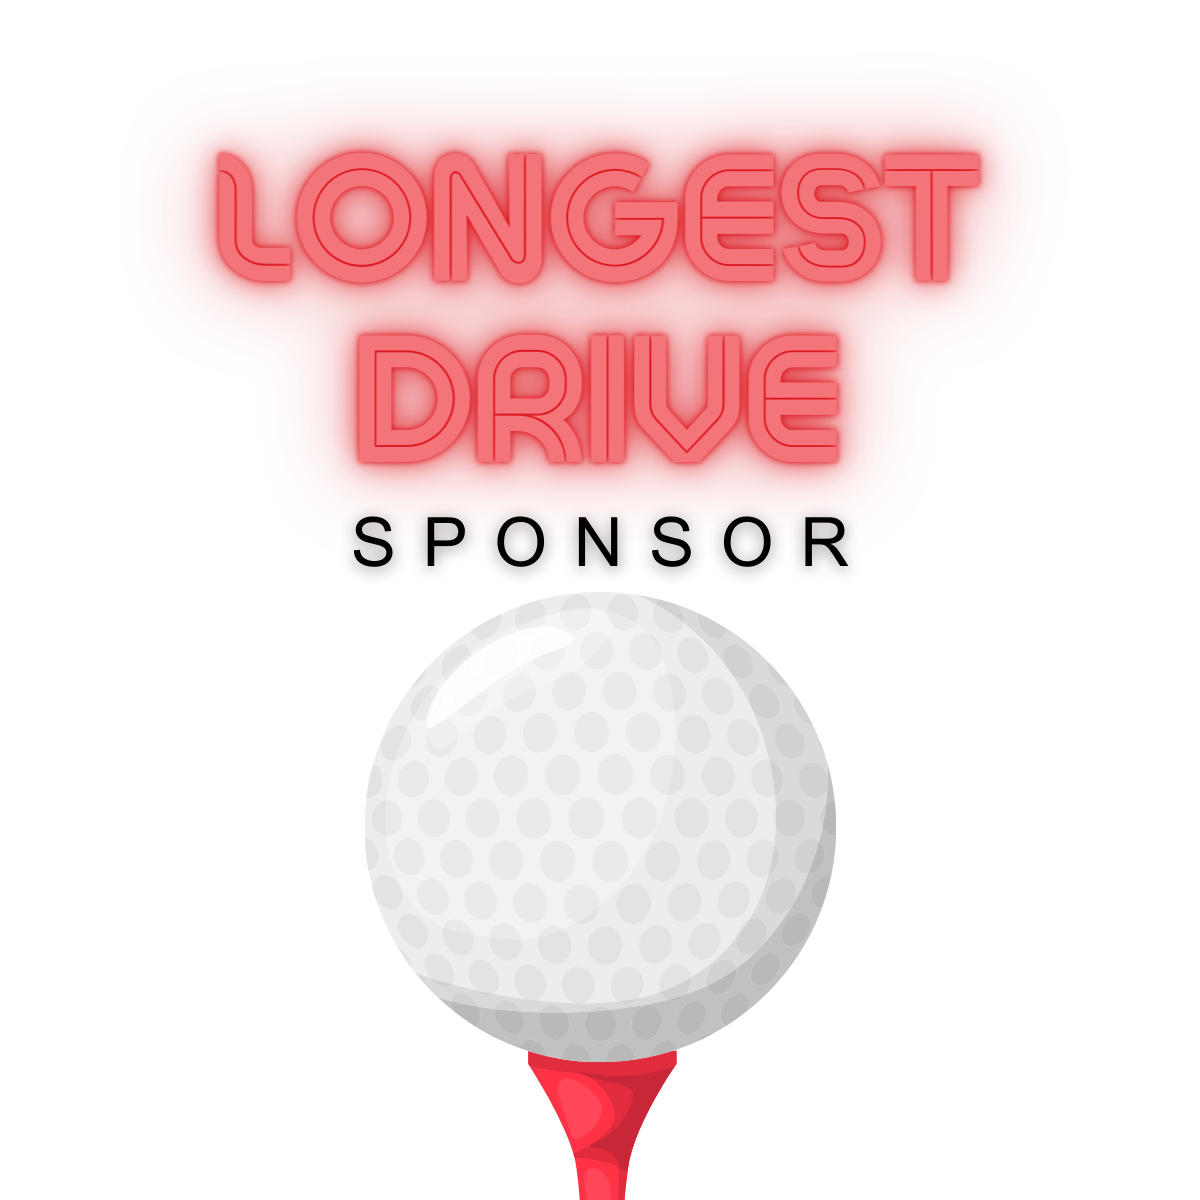 Longest Drive Sponsor - Mid-Con Open